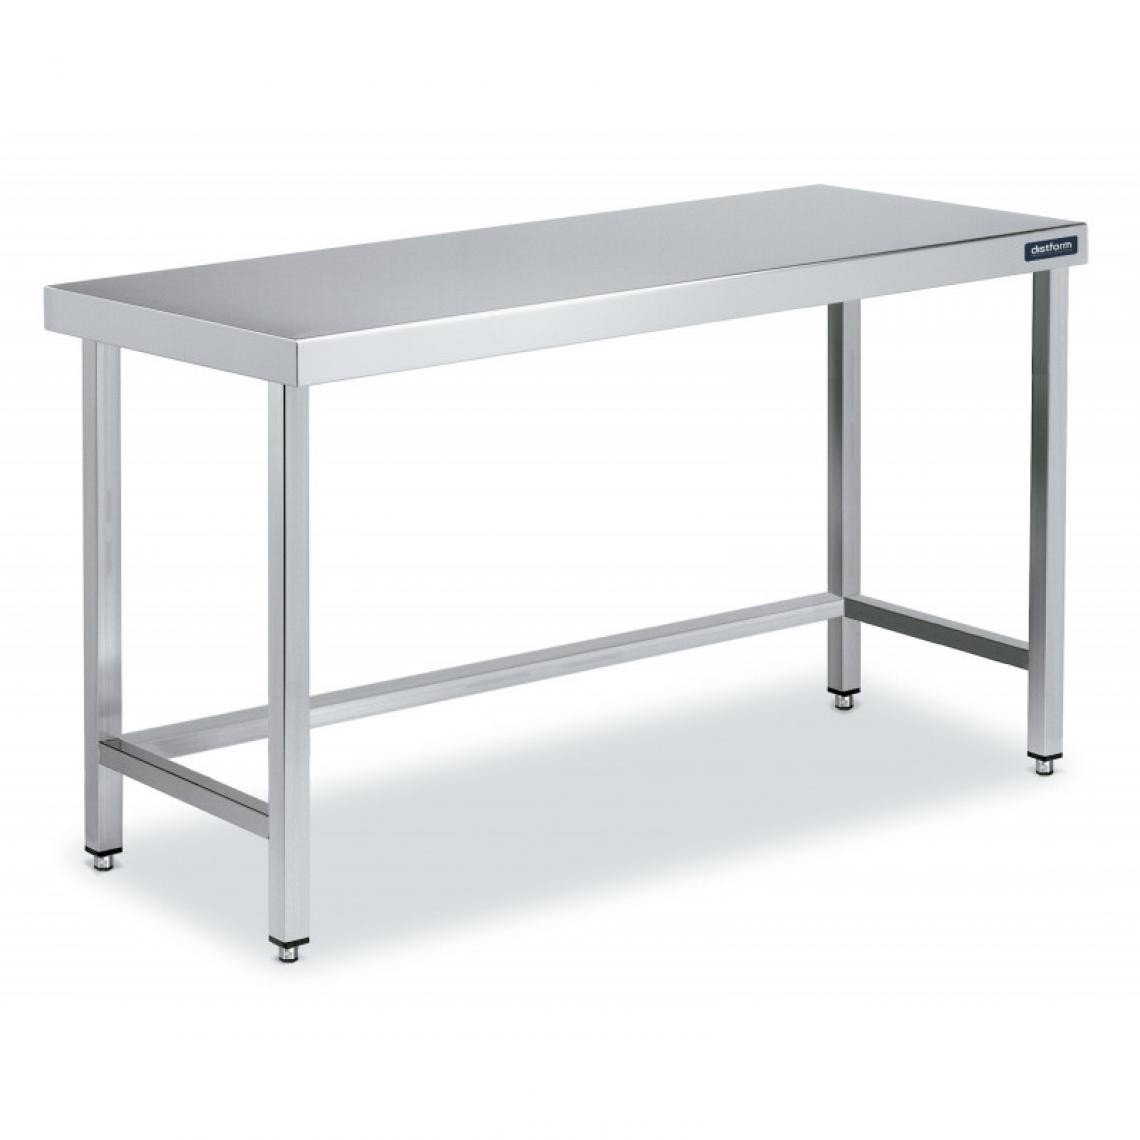 DISTFORM - Table Centrale en Inox avec renforts Profondeur 700 mm - Distform - Acier inoxydable2000x700 - Tables à manger